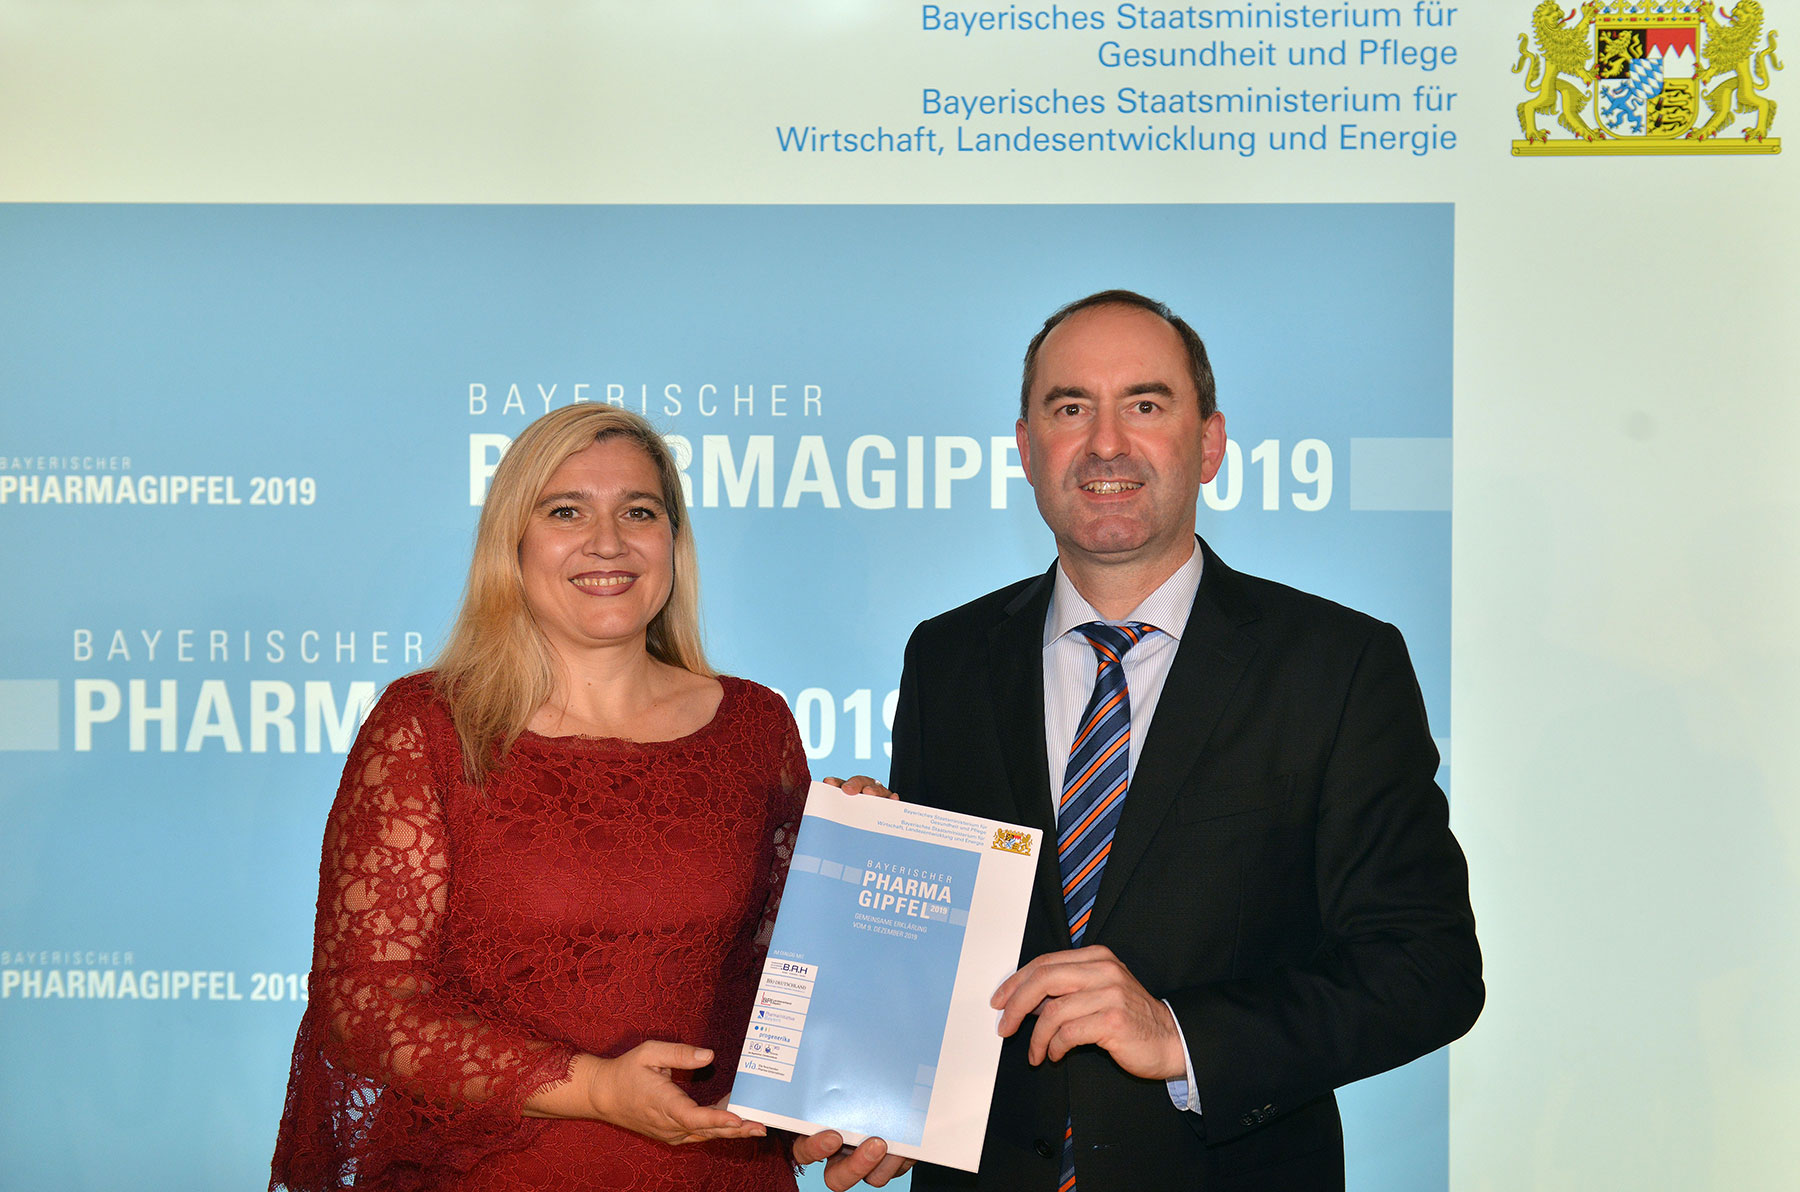 Gemeinsame Erklärung auf dem Bayerischen Pharmagipfel 2019